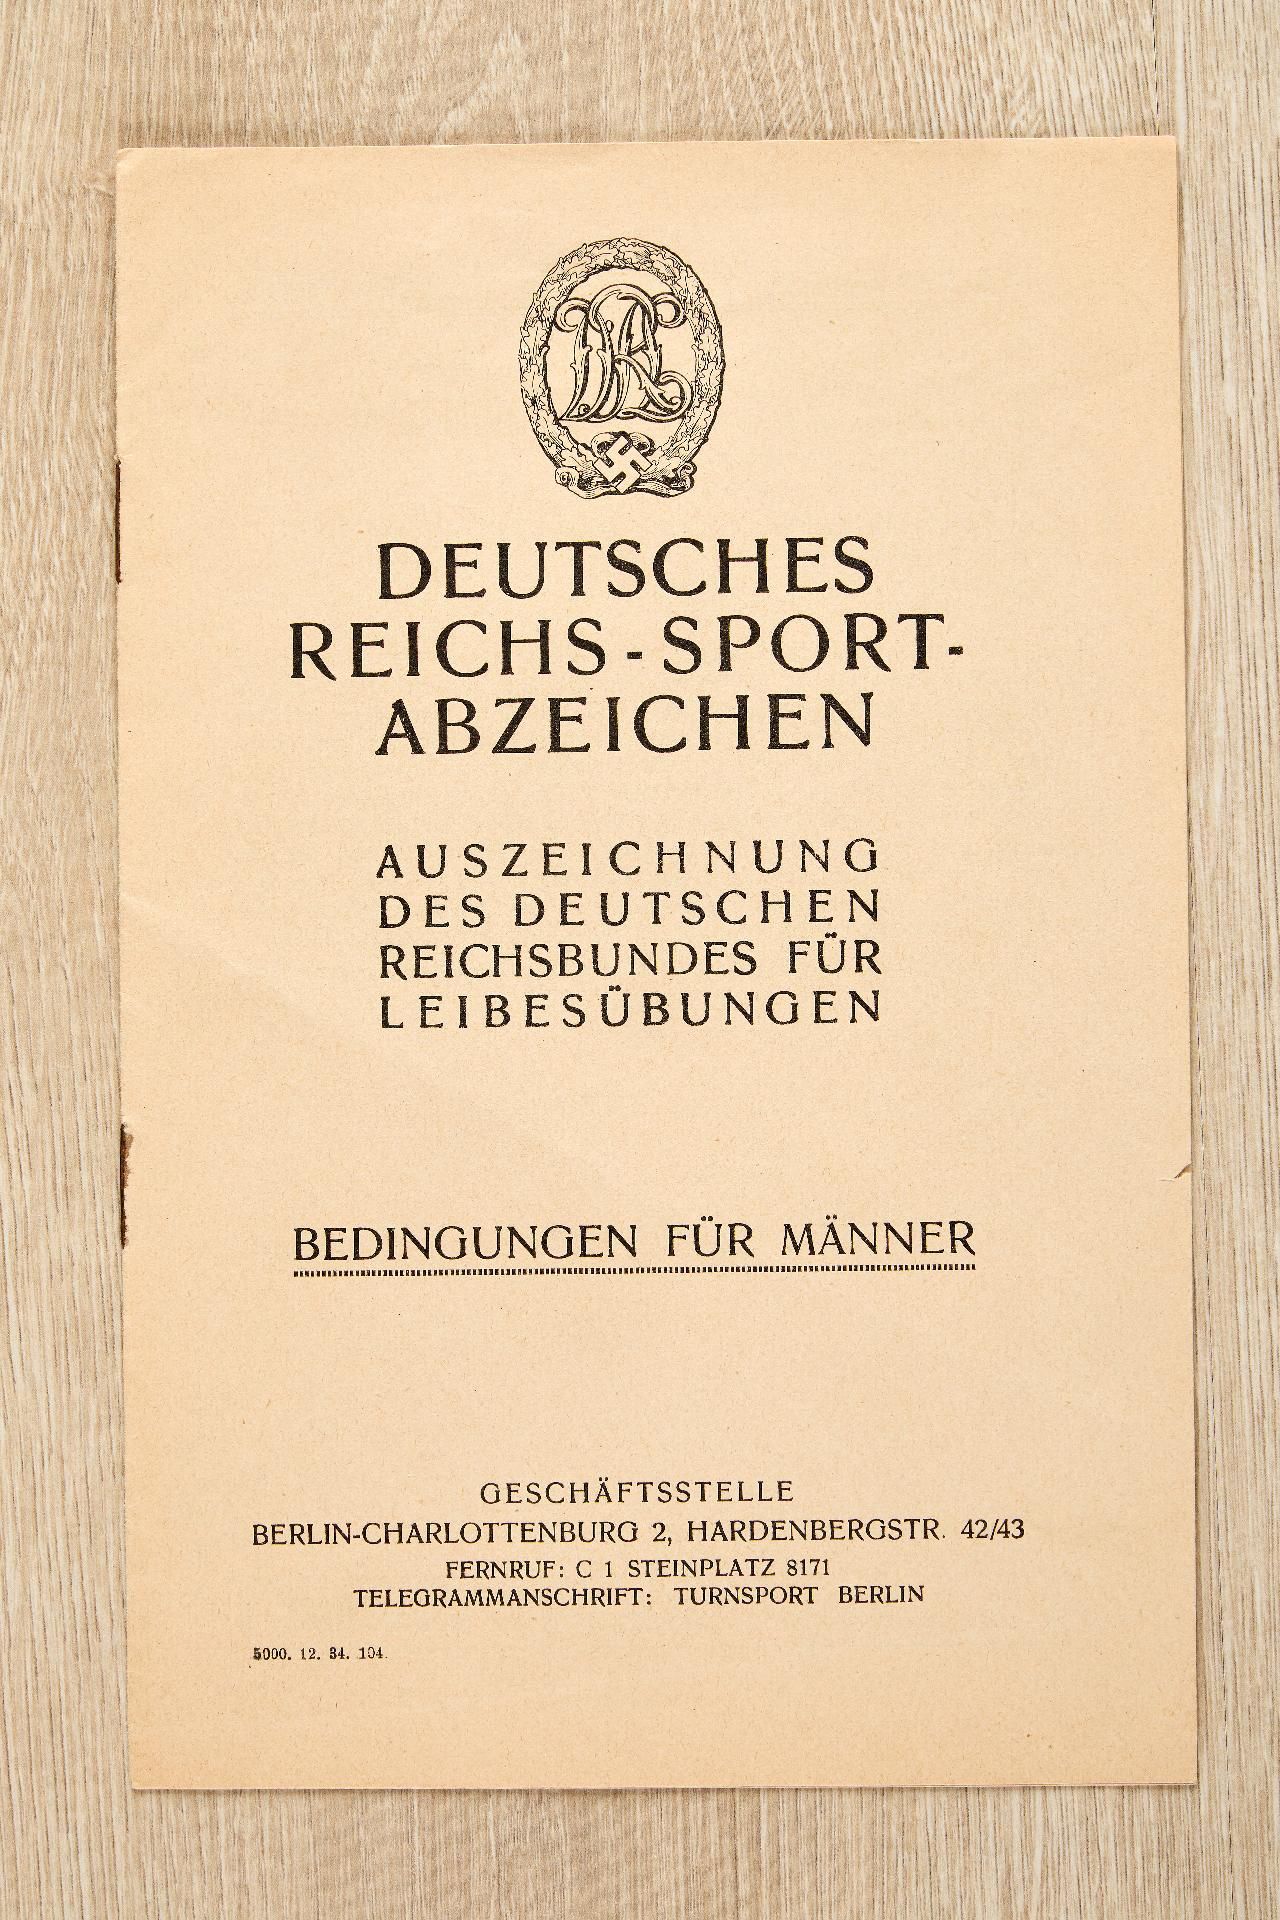 Kriegsmarine : Auszeichnungs- und Dokumentennachlass des Korvettenkapitäns Helmut Drechsler - Image 18 of 28